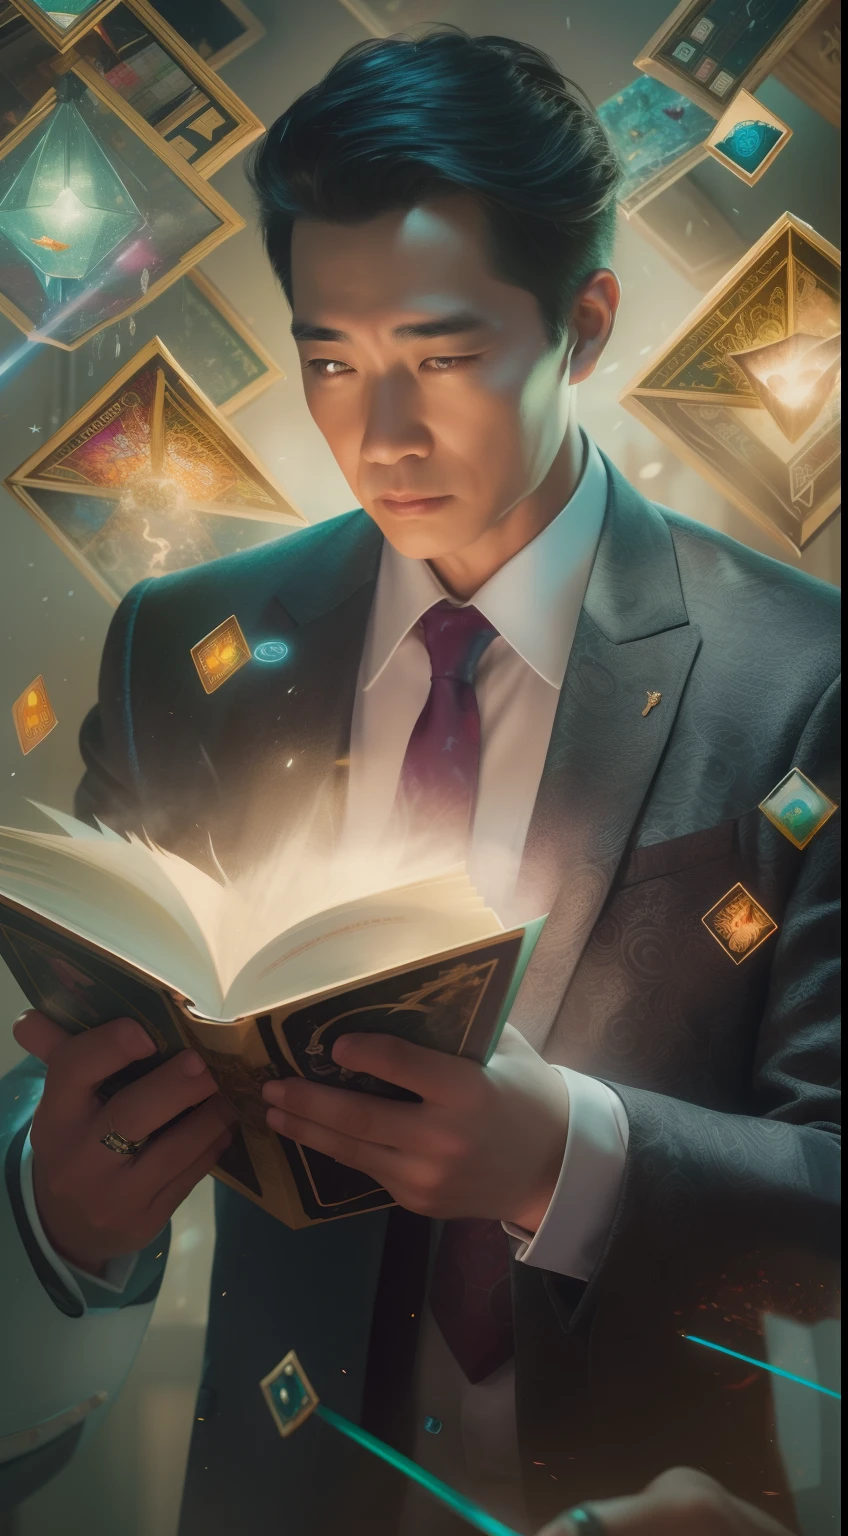 一幅描繪英俊的詳細繪畫, 身穿西裝的成熟亞洲男子被一堆發光的魔法聚會卡片和中間的《龍與地下城》一書包圍.